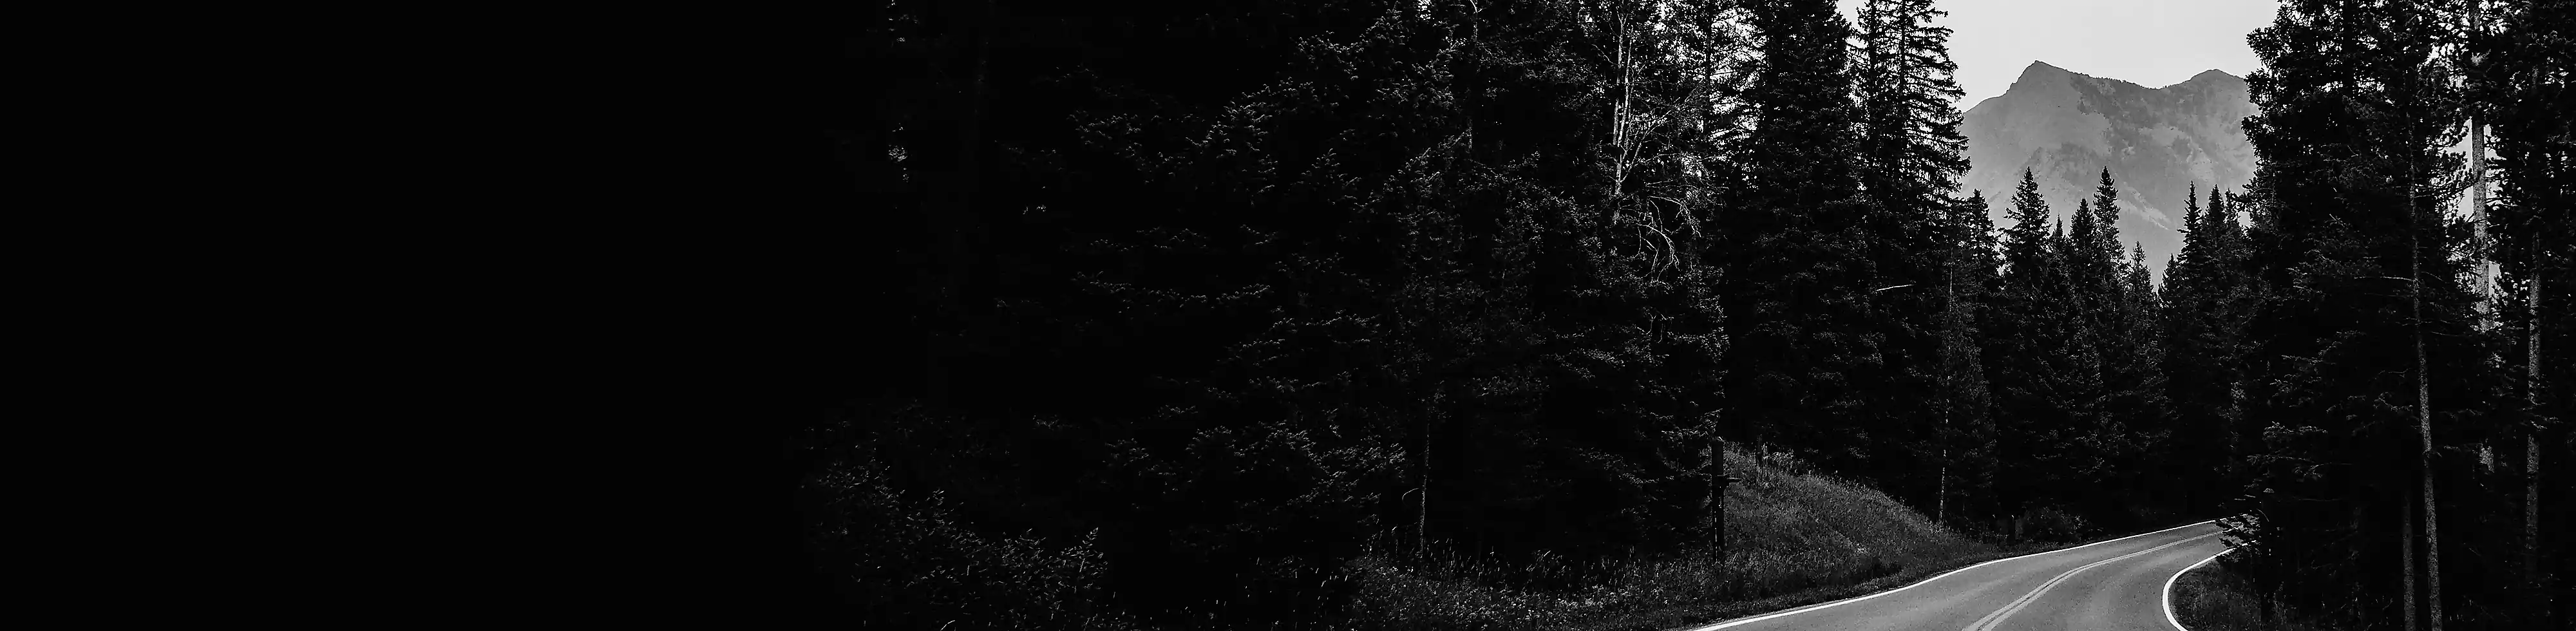 En tvåfilig väg som löper genom skogen med ett berg i bakgrunden, i svartvitt.